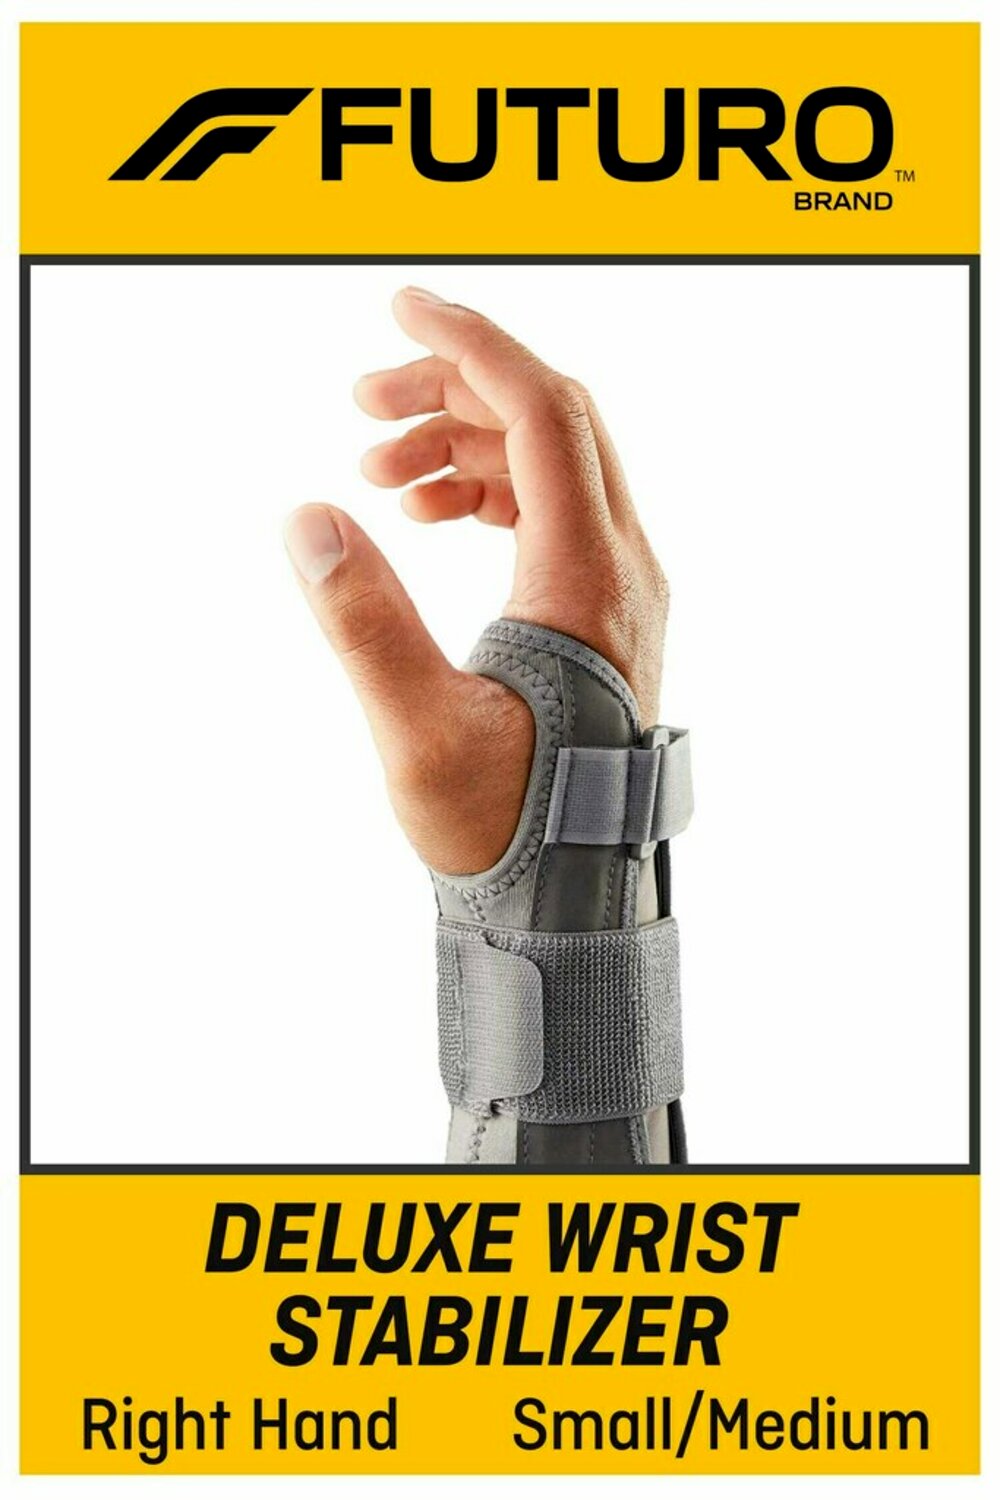 7100160907 - FUTURO Deluxe Wrist Stabilizer Right Hand, 09090ENT, S/M